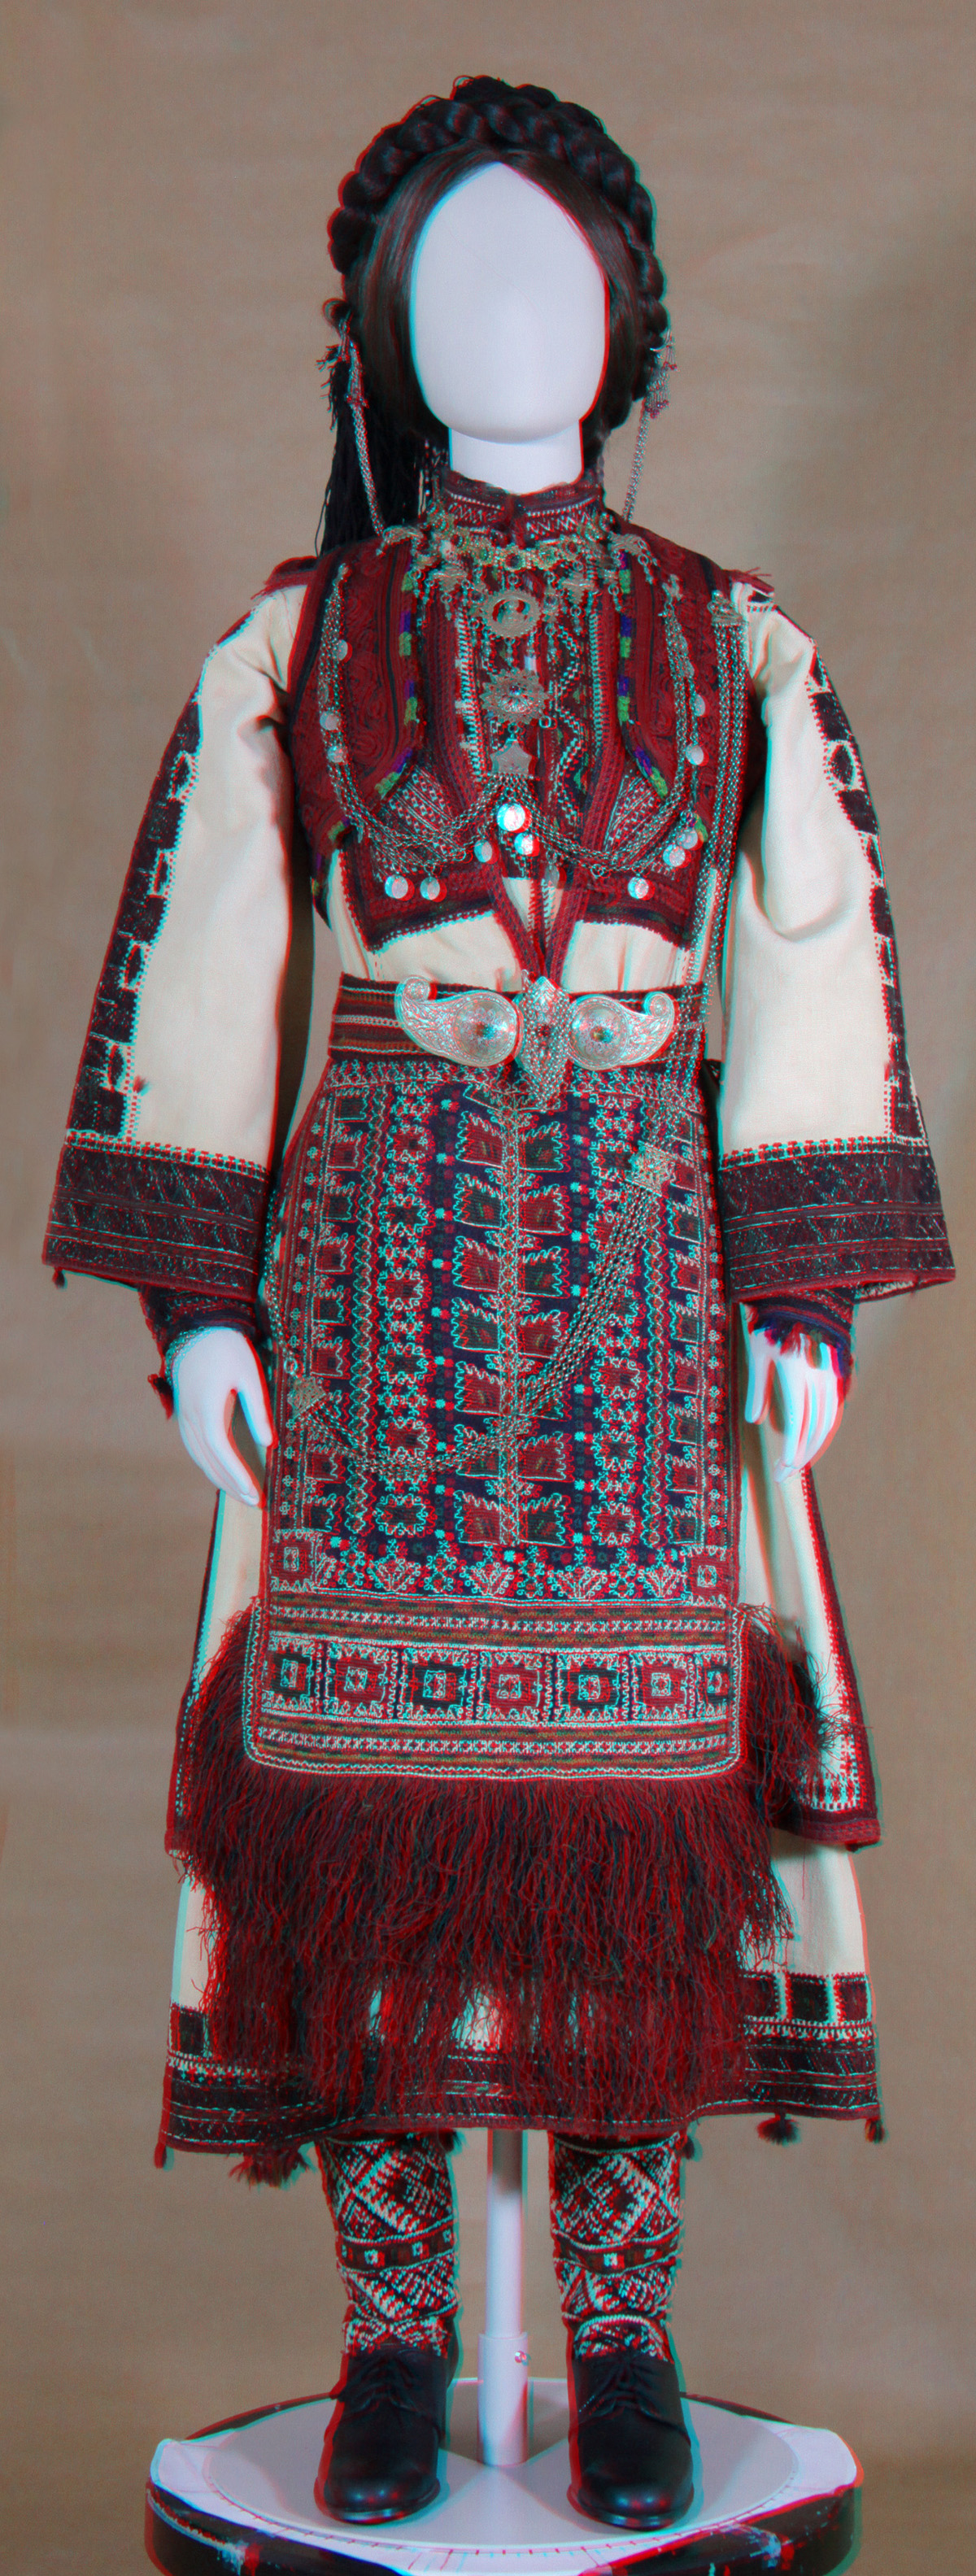 Κούκλα με γυναικεία φορεσιά από Βέντσια Ν. Γρεβενών (δυνατότητα εστίασης στο κεφάλι) (από την αίθουσα Δυτικής Μακεδονίας)